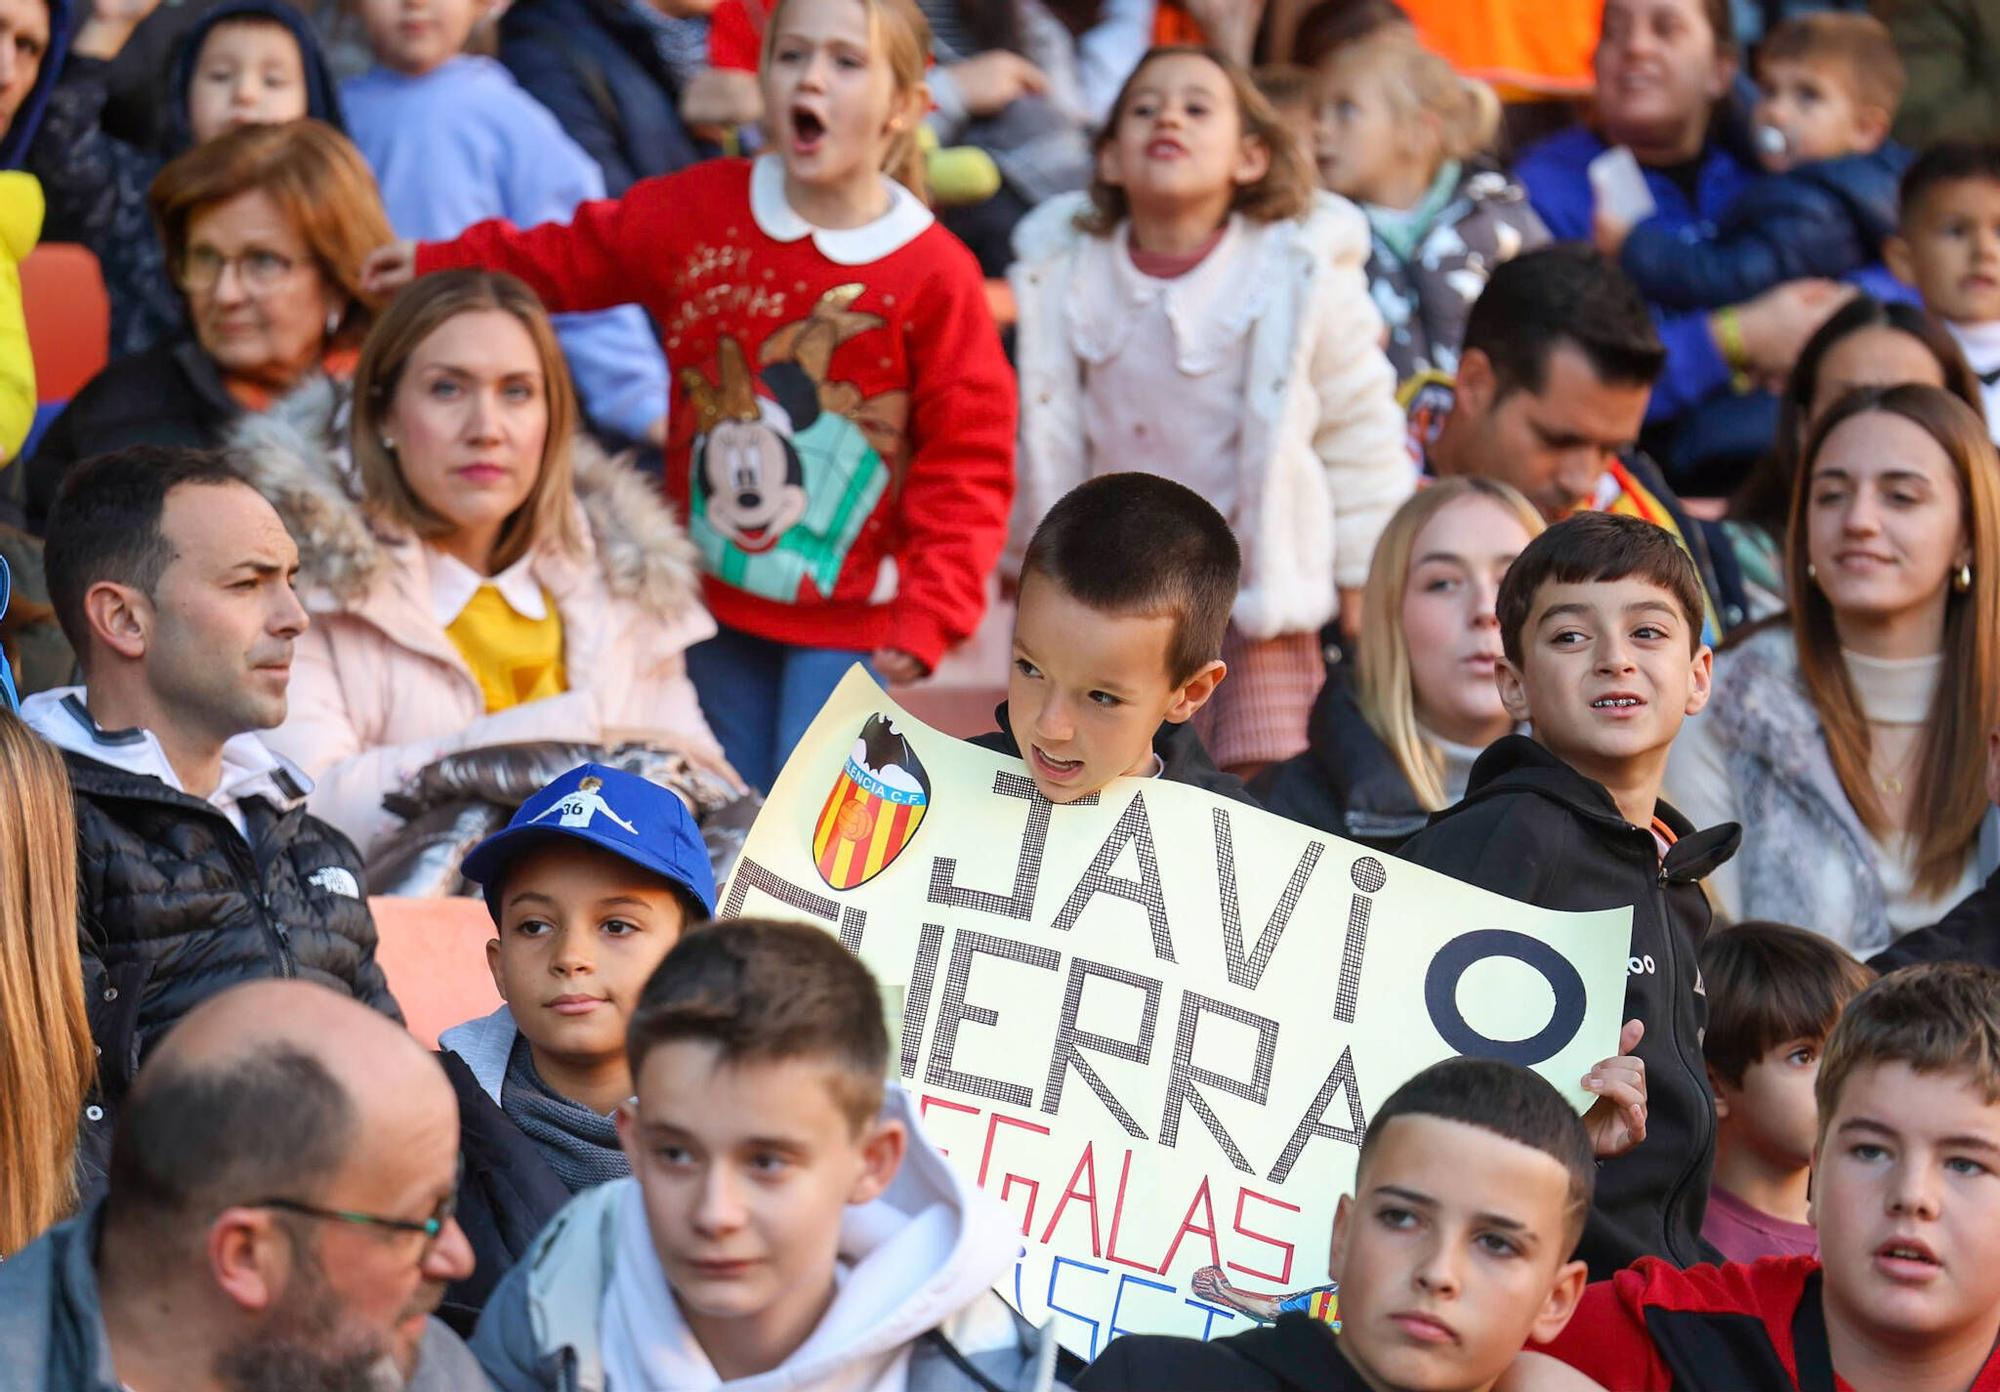 El Valencia volvió a los entrenamientos y lo hizo ante cerca de 15.000 aficionados, que dieron color a las gradas de Mestalla